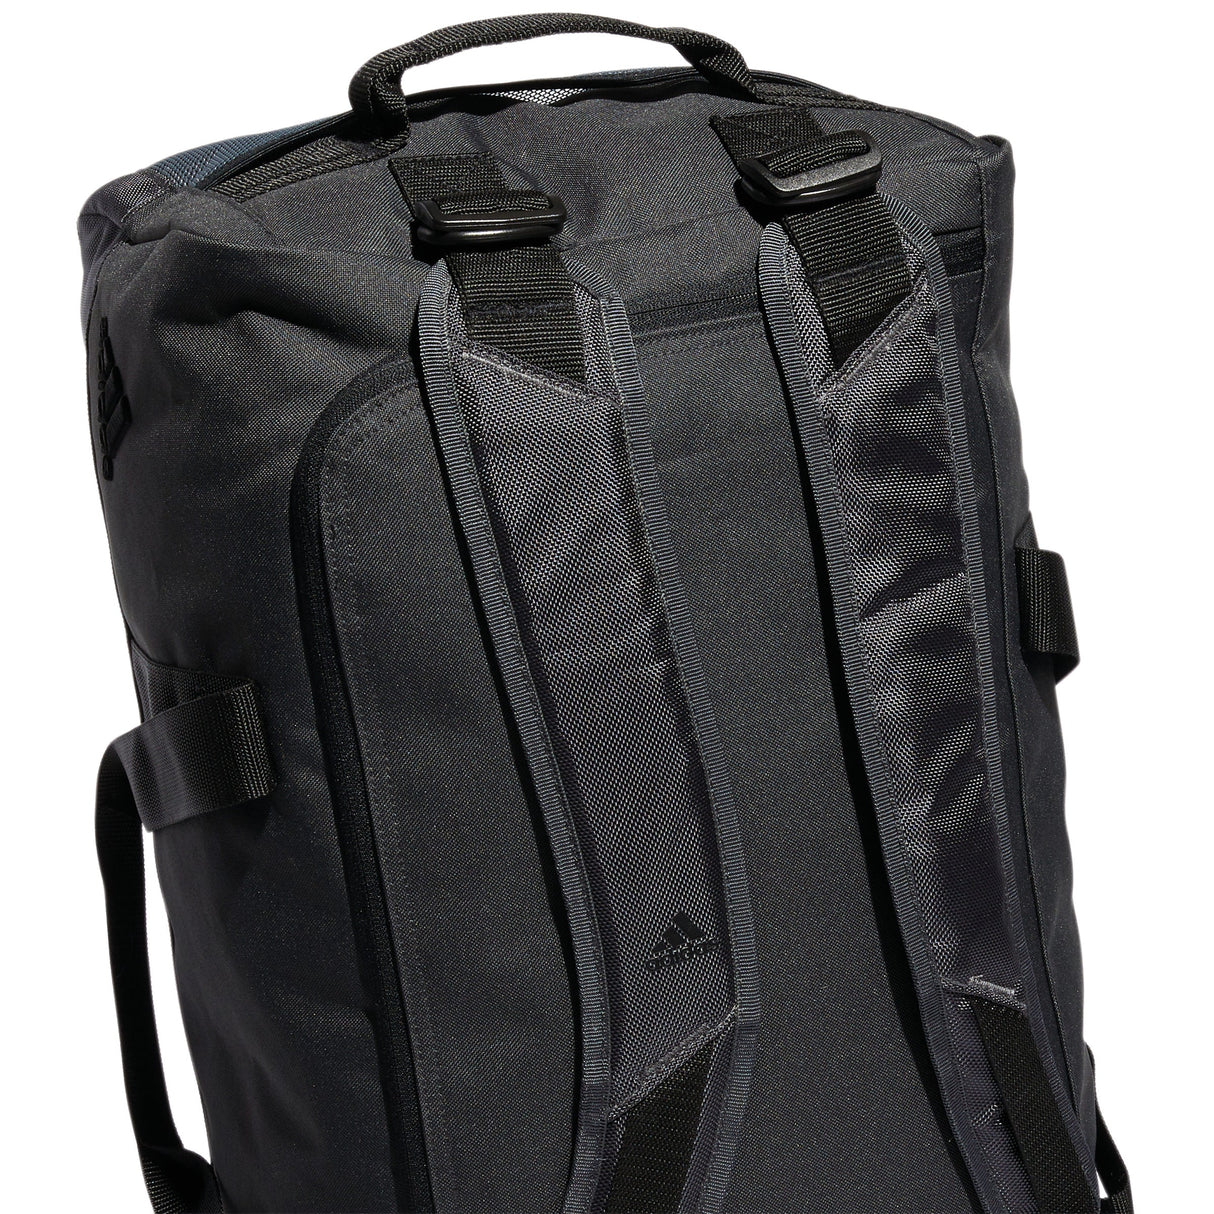 Adidas® Golf Duffle Bag